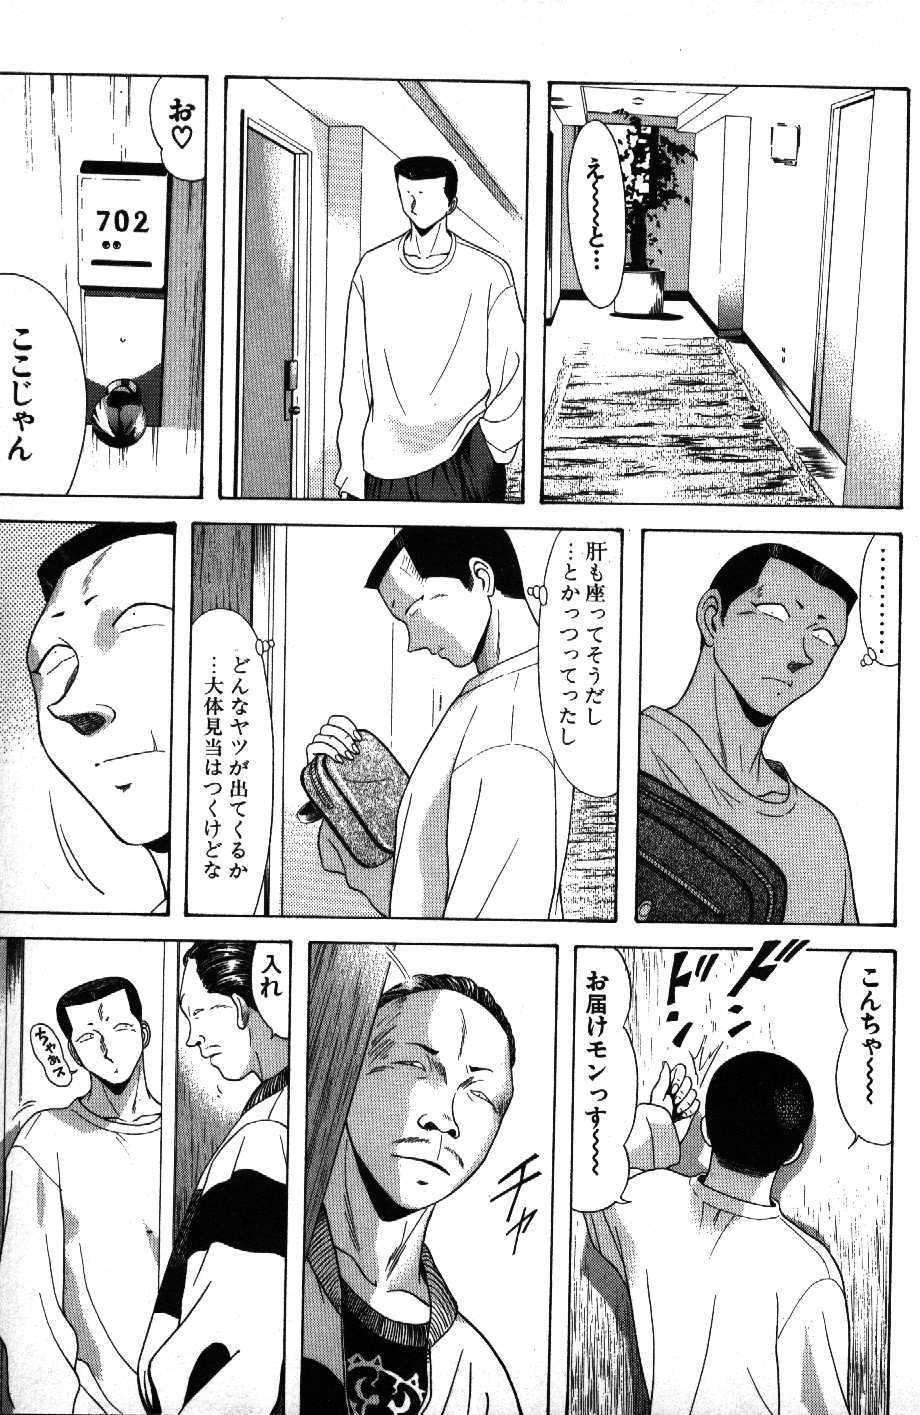 Kyoukasho ni nai vol. 11 教科書にないッ！